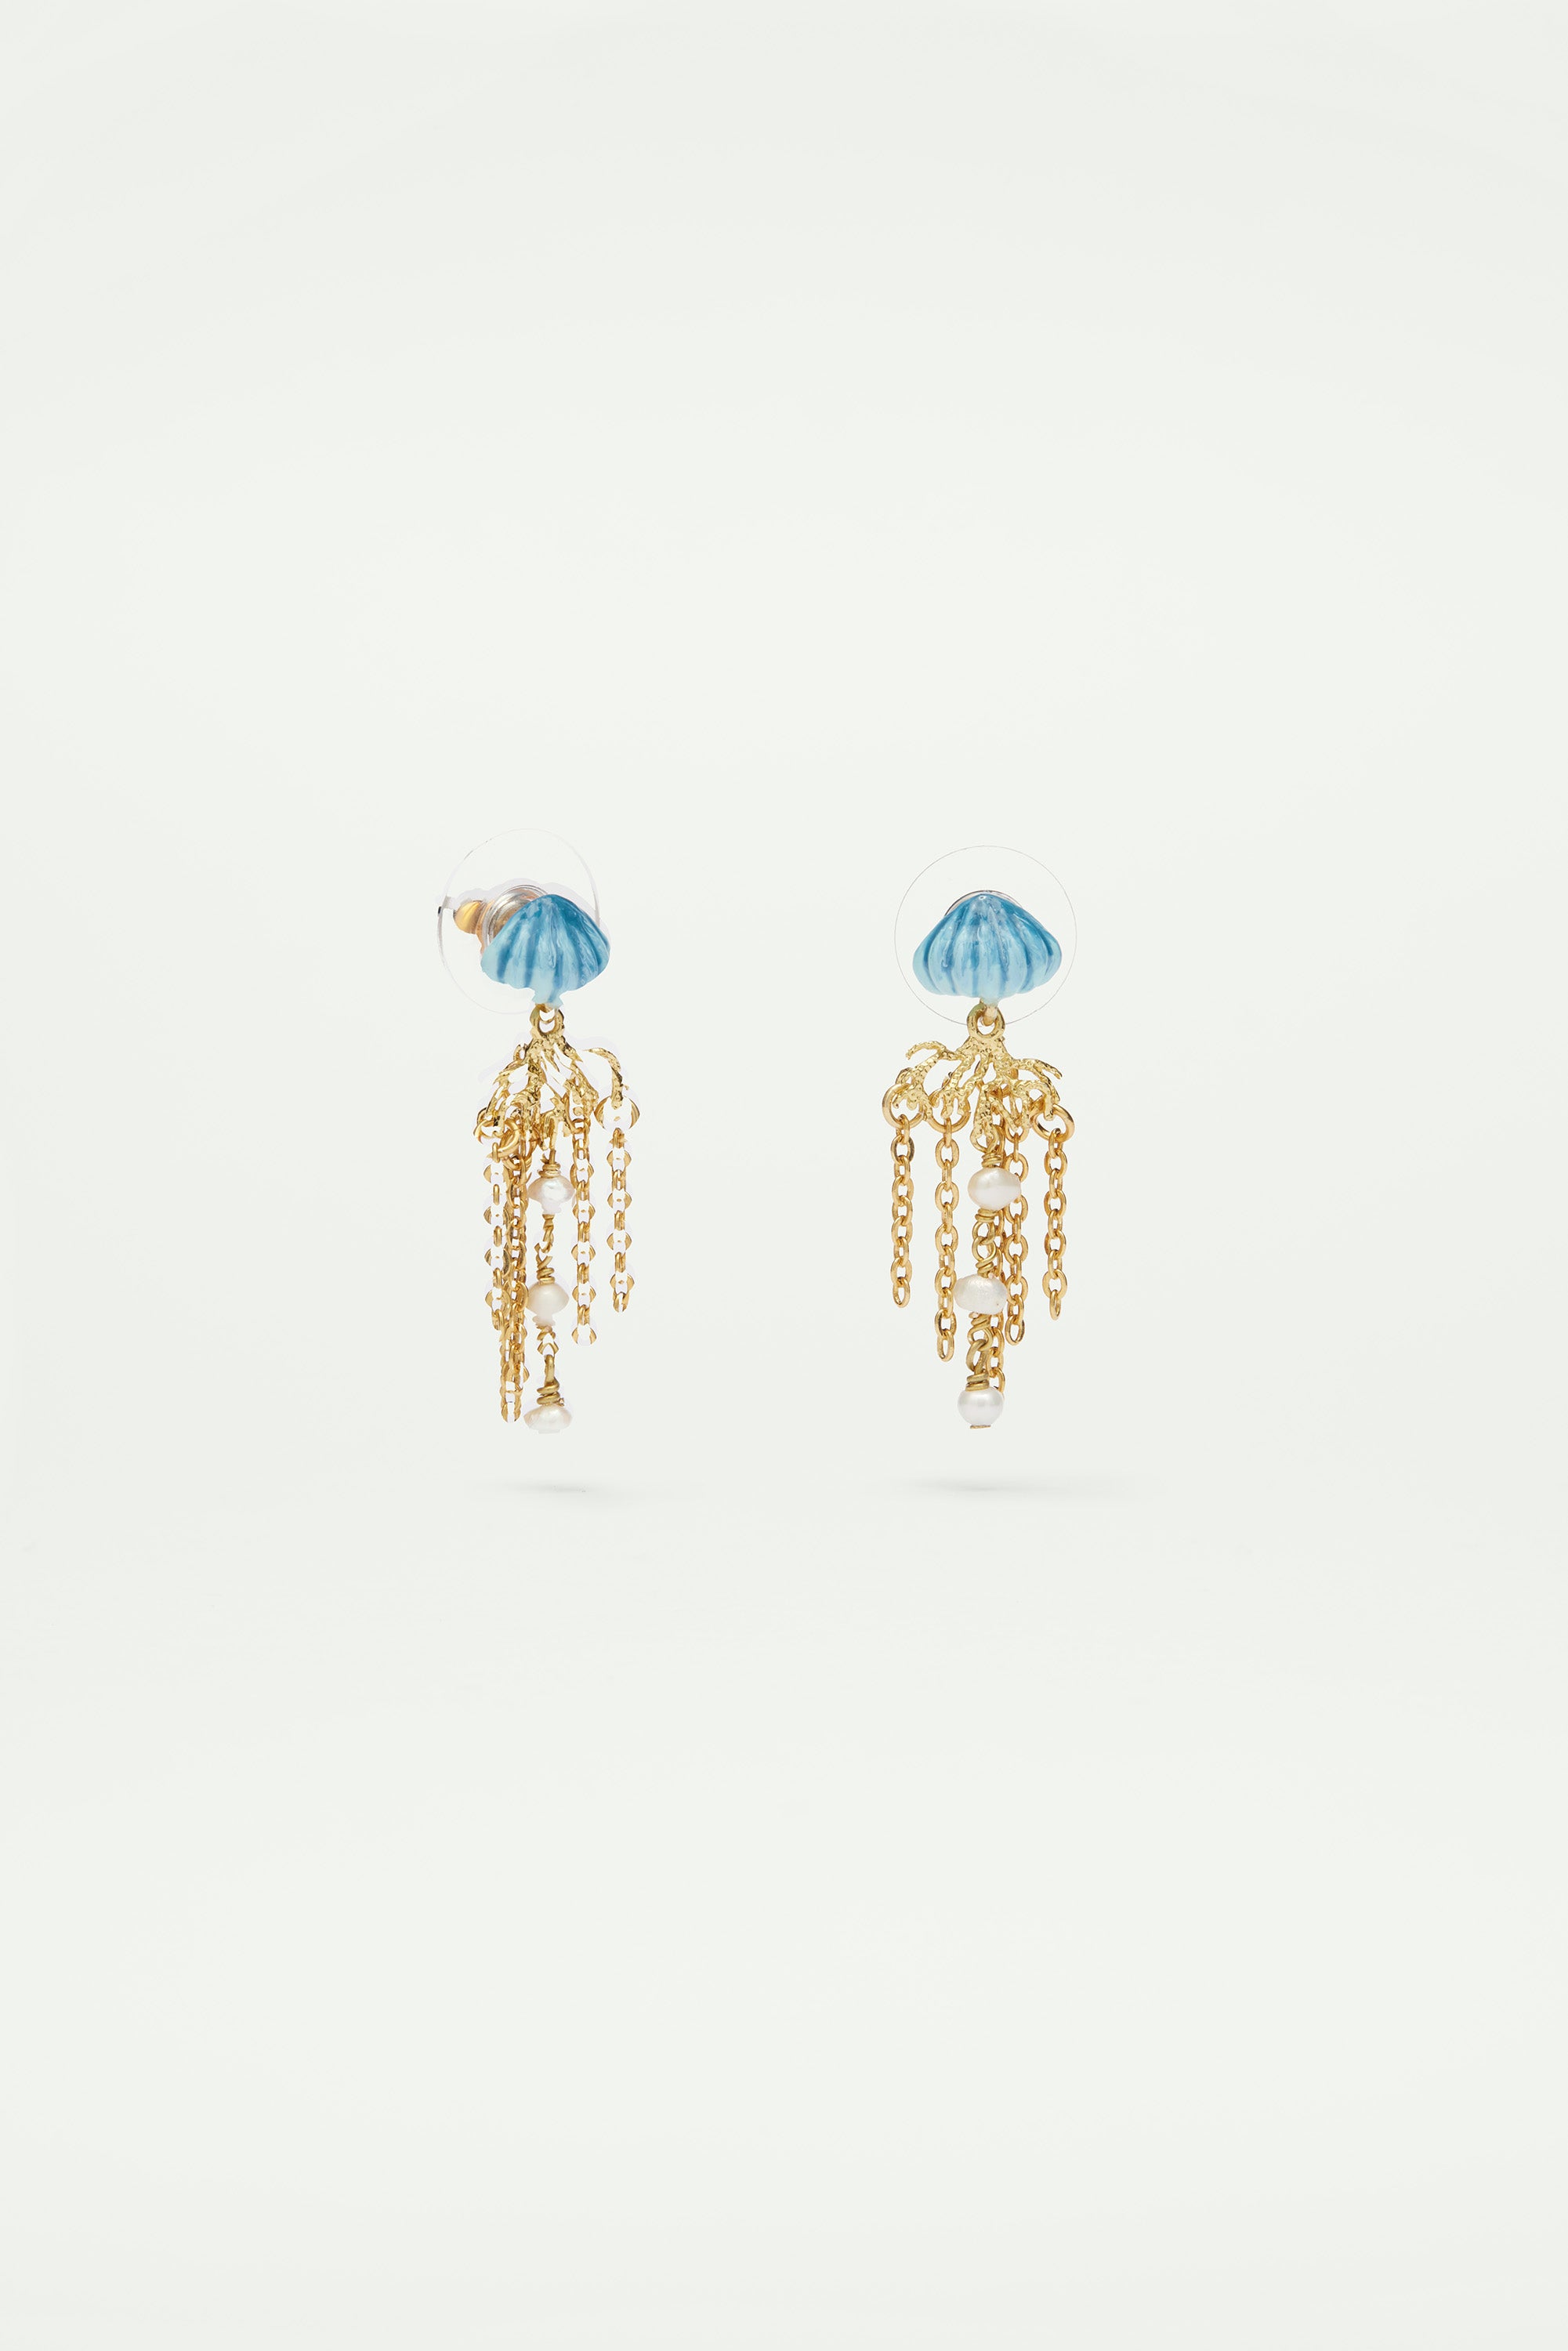 Boucles d'oreilles pendantes tiges méduse bleue et dorée